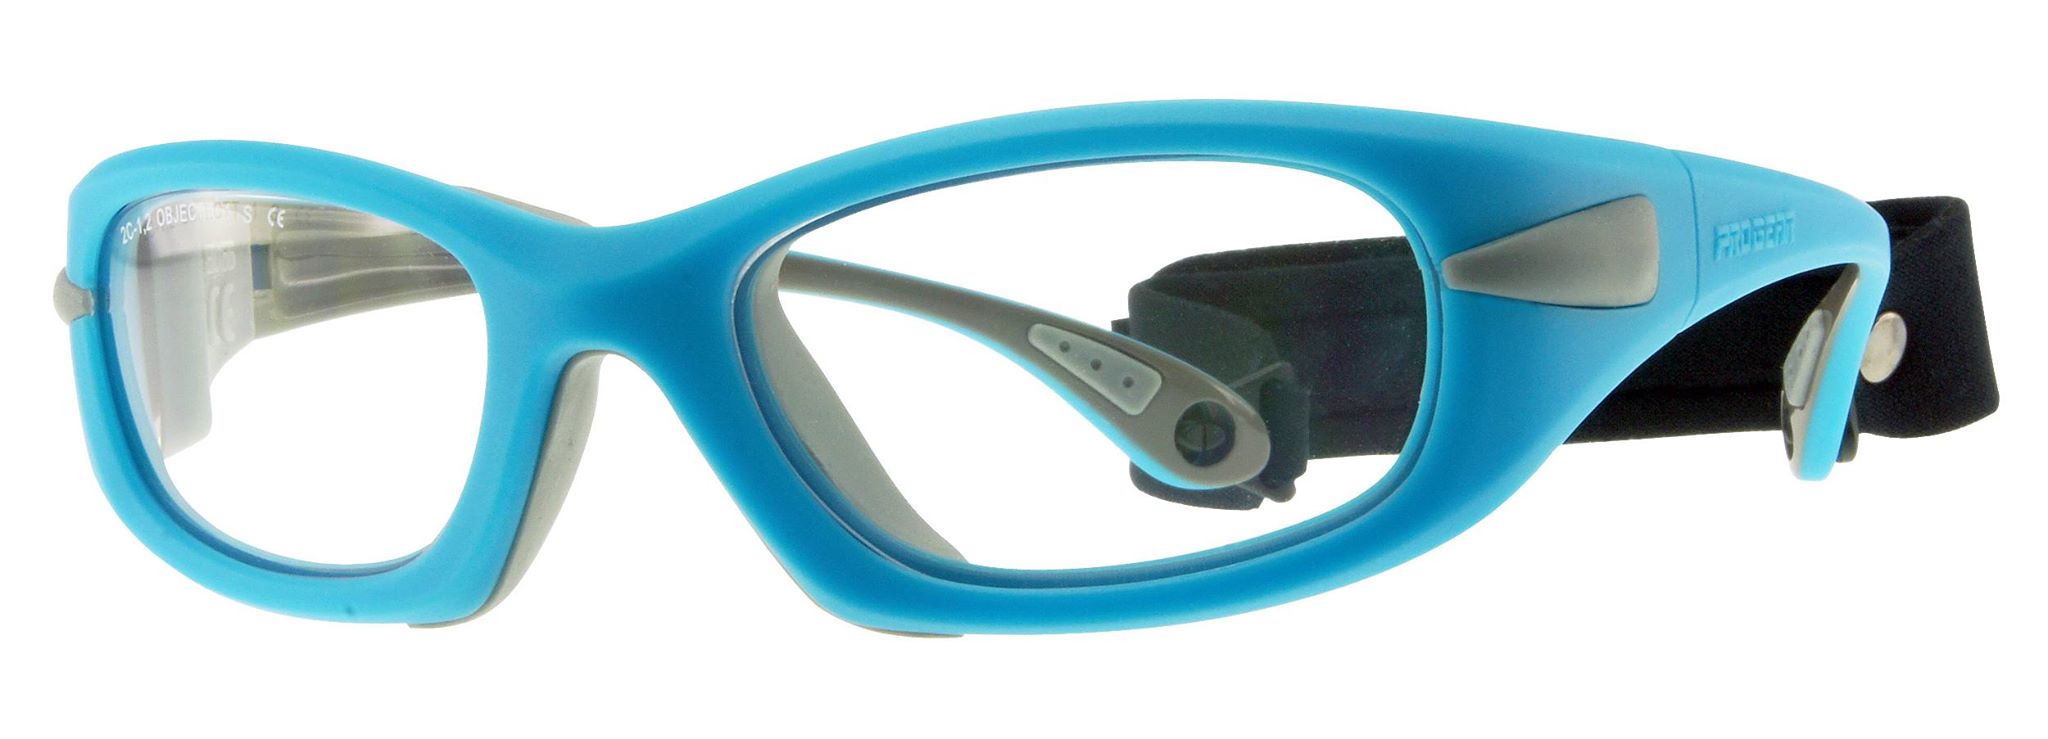 Progear Eyeguard Frame Neon Blue